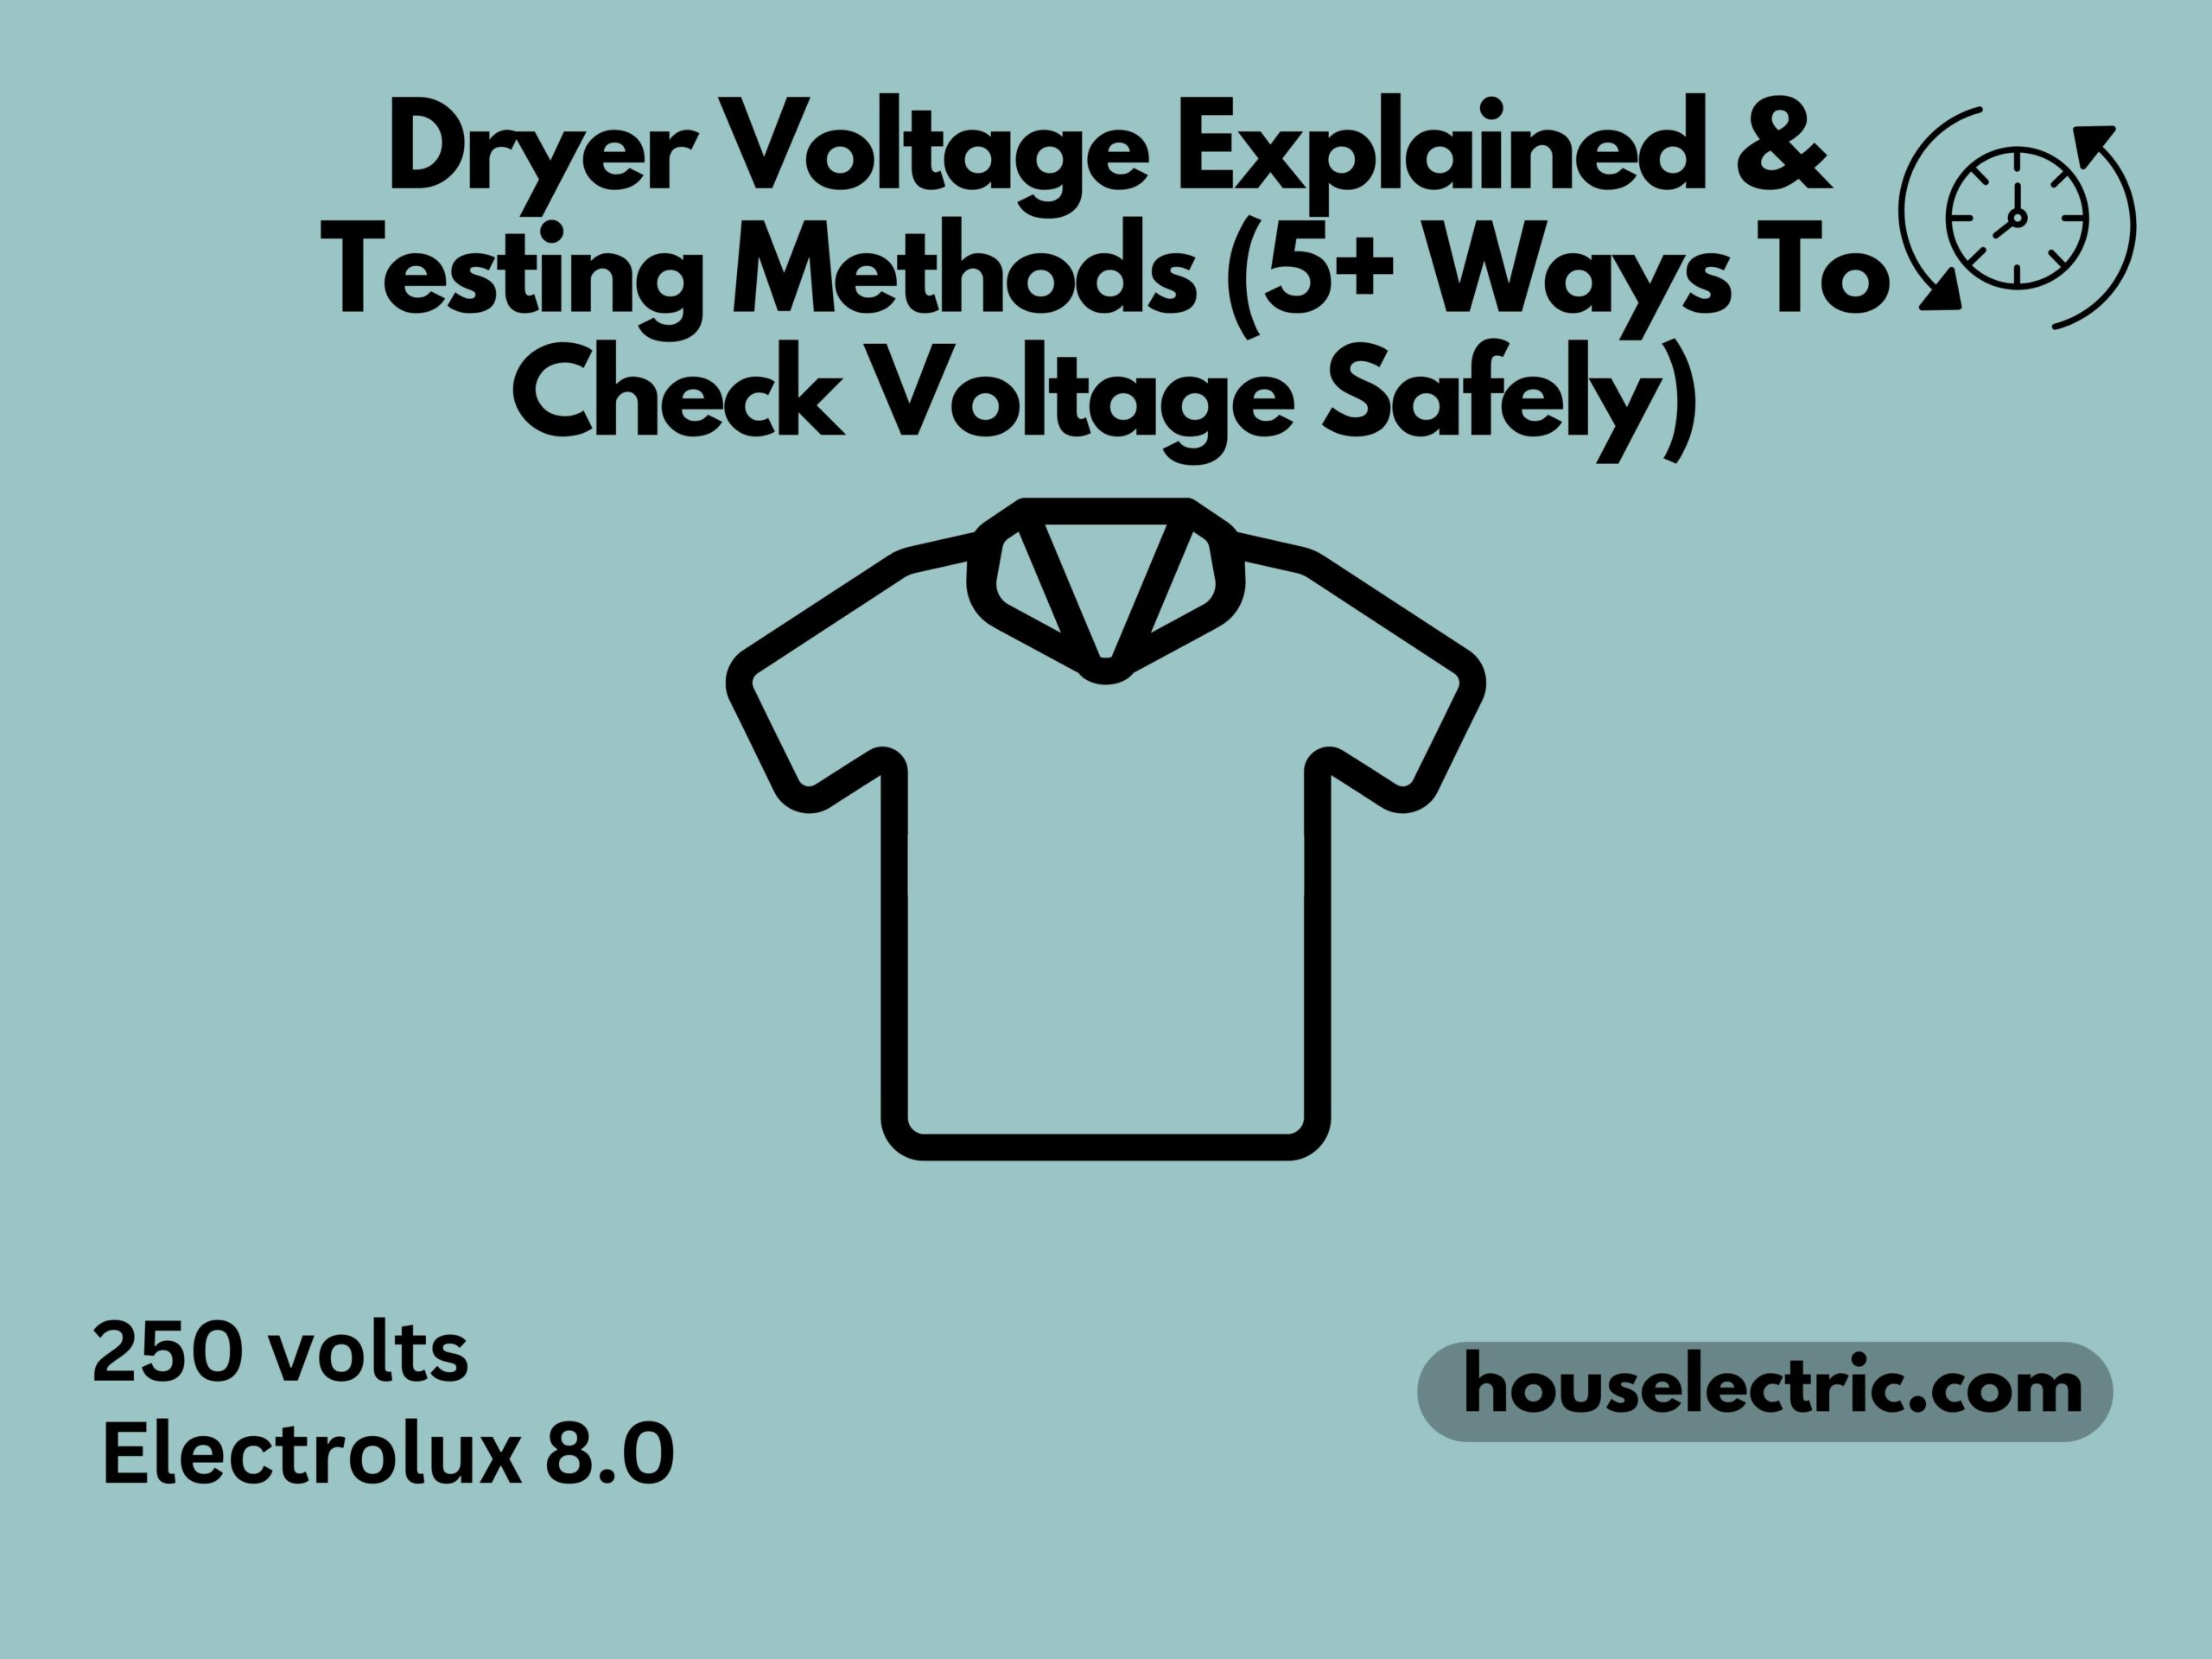 Dryer voltage